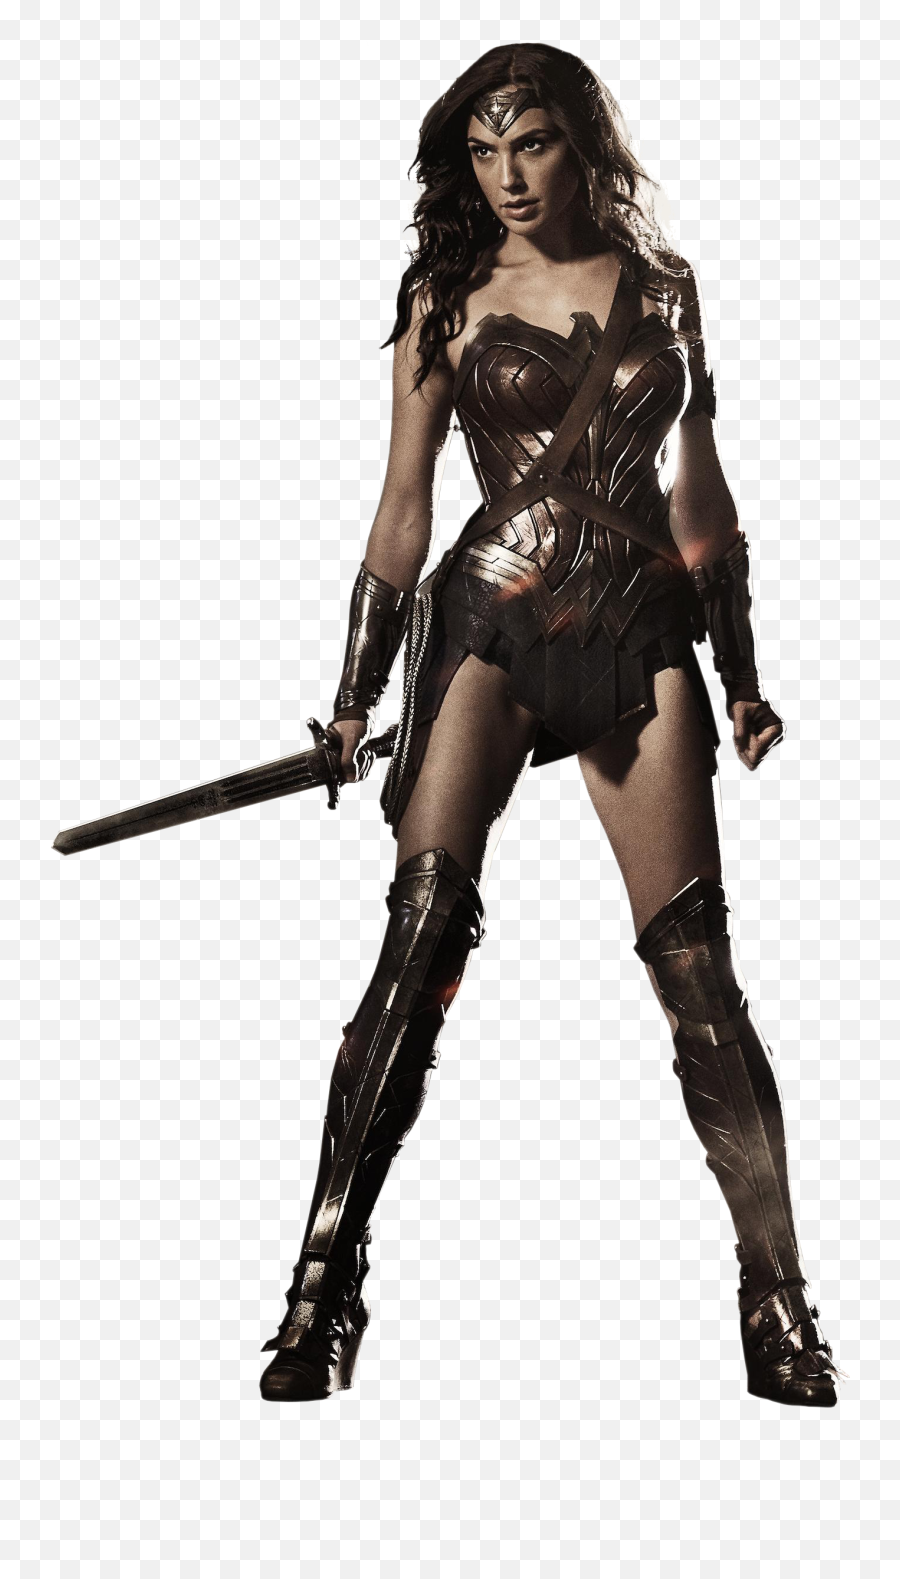 Download Wonder Woman Free Png - Free Transparent Wonder Woman Outfit Gal Gadot,Wonder Woman Logo Png